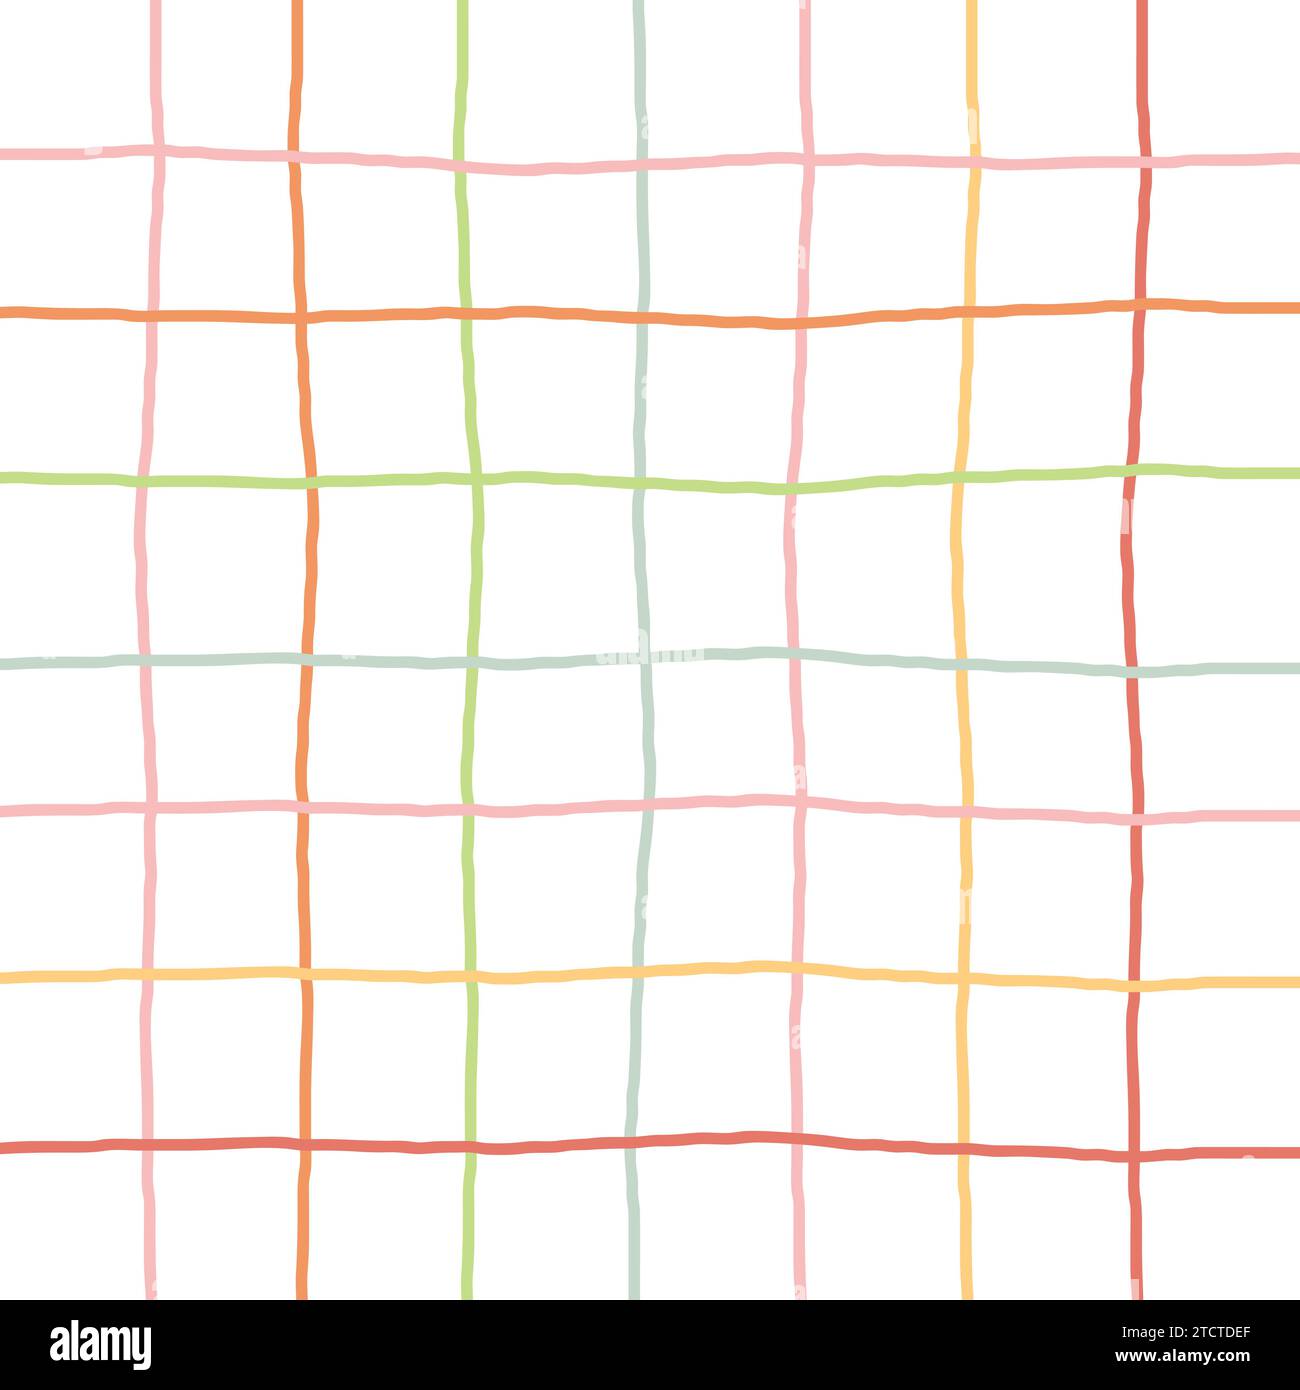 Modello vettoriale a quadri di controllo Doodle Gingham. Verticali e orizzontali tracciati a mano incrociano giallo, rosso, rosa, arancio, grigio, strisce verdi e viola. Chequer Illustrazione Vettoriale